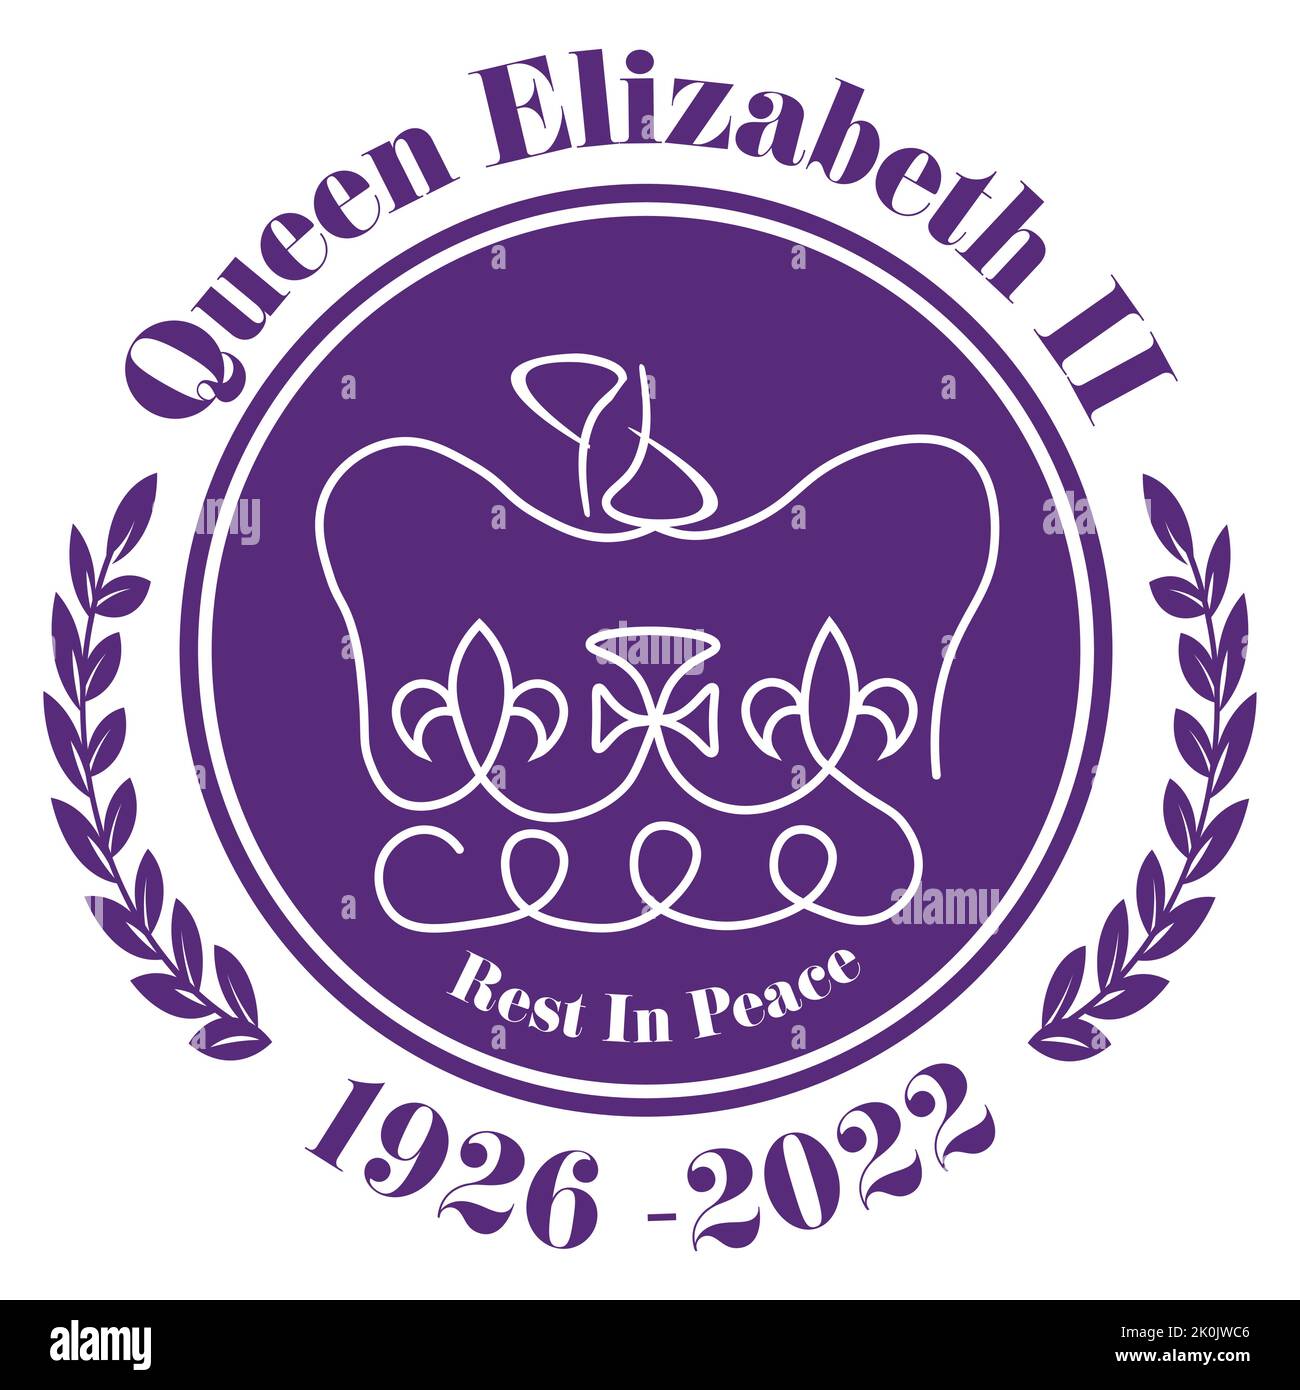 The Queens Death 2022 - Ihre Majestät die Königin stirbt im Alter von 96 Jahren die britische Monarchin dient ihrem Land seit 70 Jahren. Stock Vektor